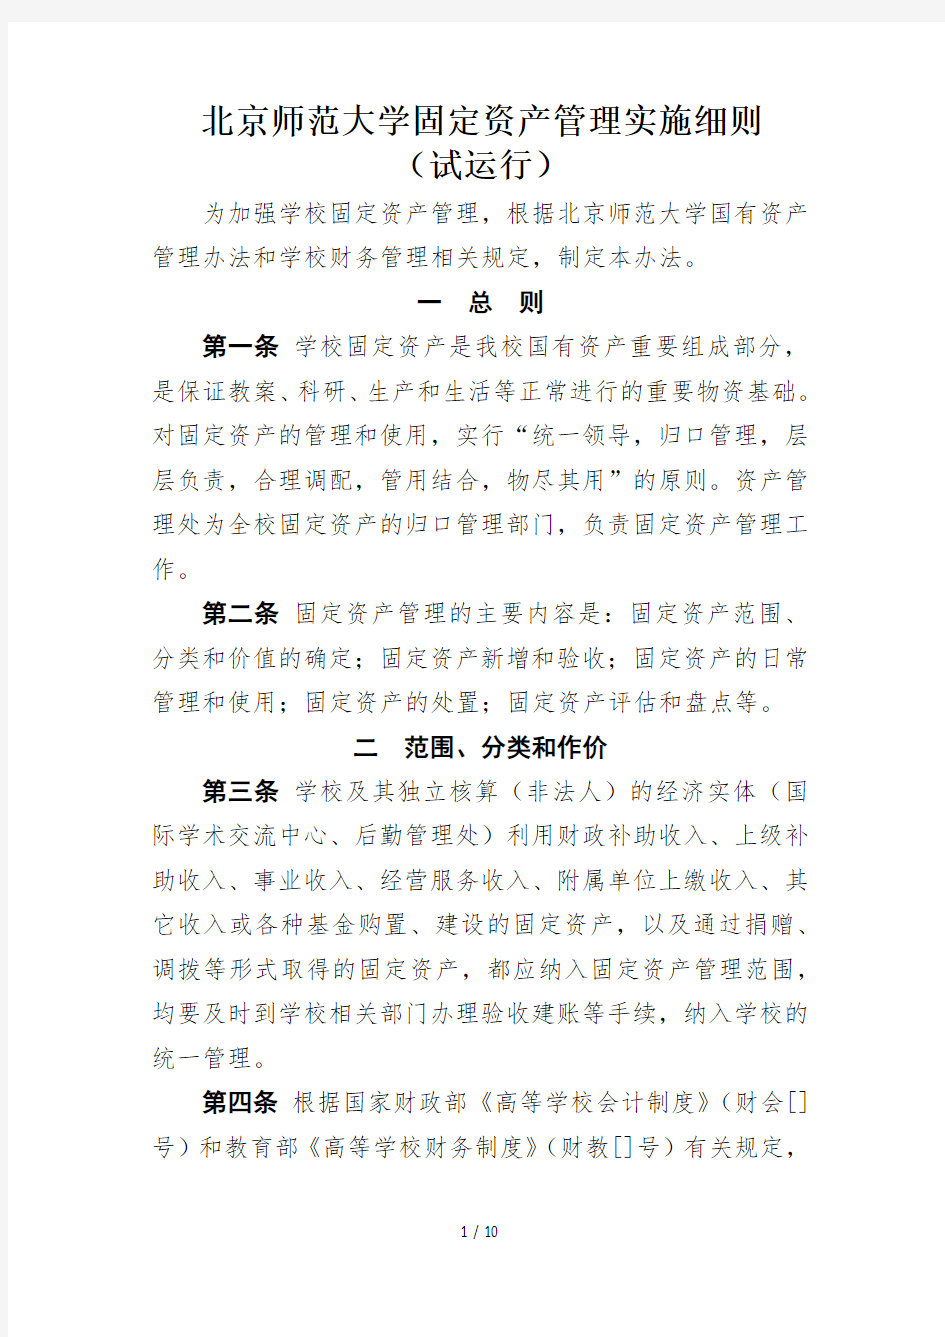 北京师范大学固定资产管理实施细则